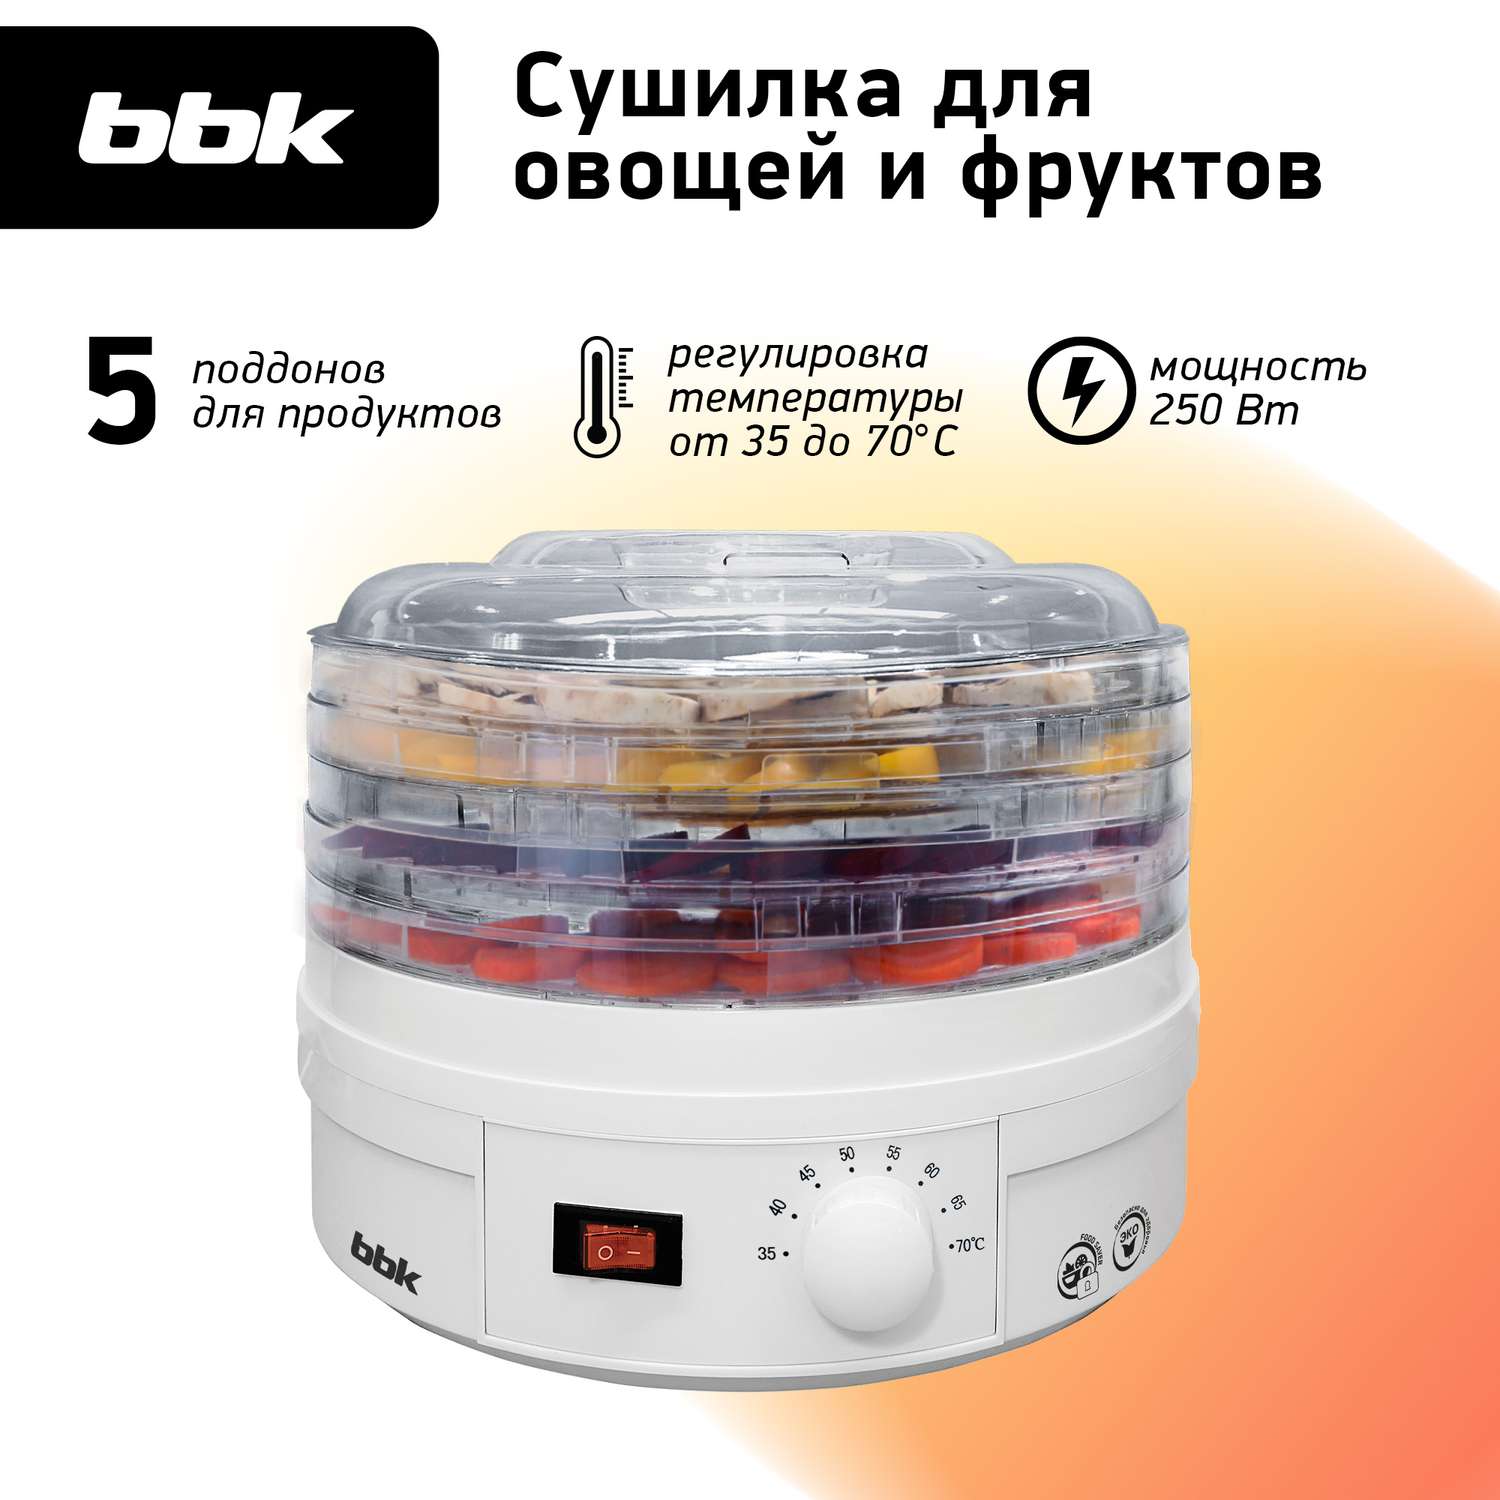 Сушилка электрическая BBK BDH202M мощность 250 Вт механическое управление белая - фото 1